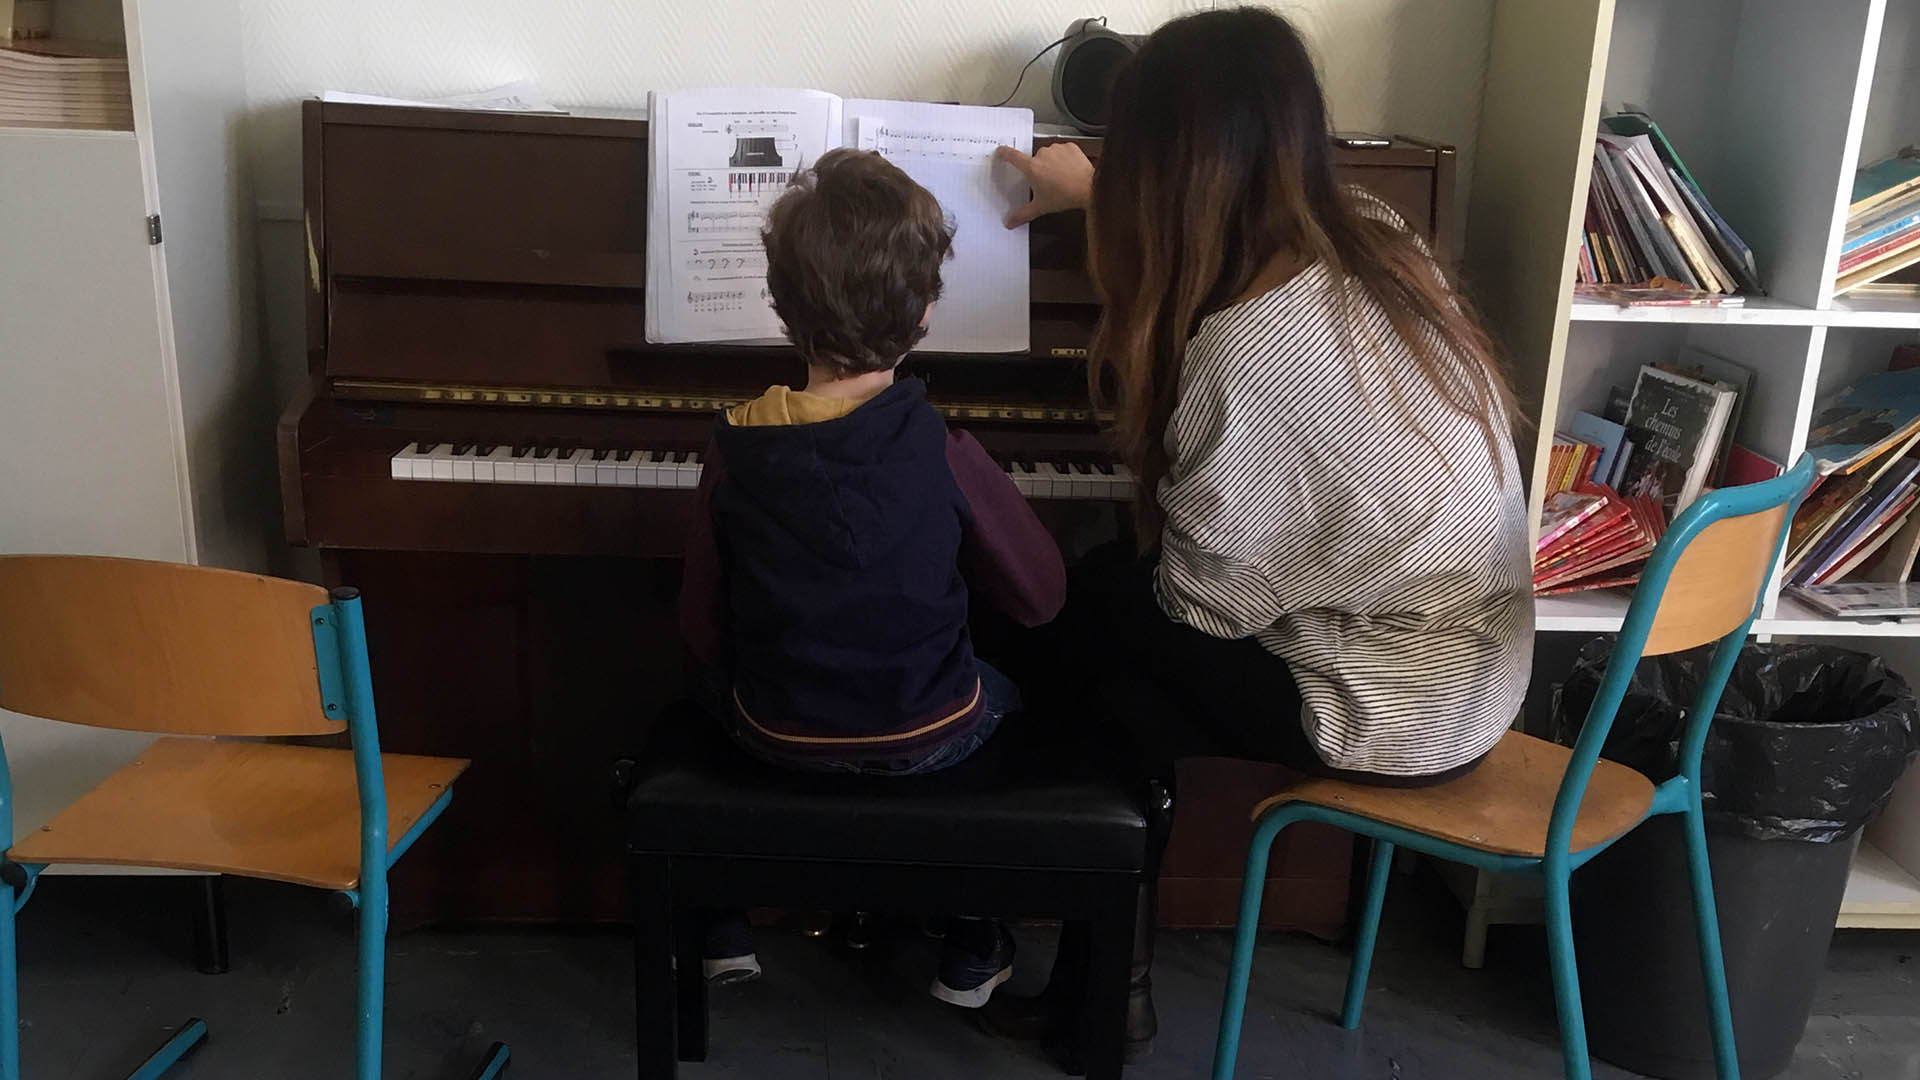 La pratique musicale pour favoriser la réussite scolaire, un projet pédagogique innovant au Kremlin-Bicêtre